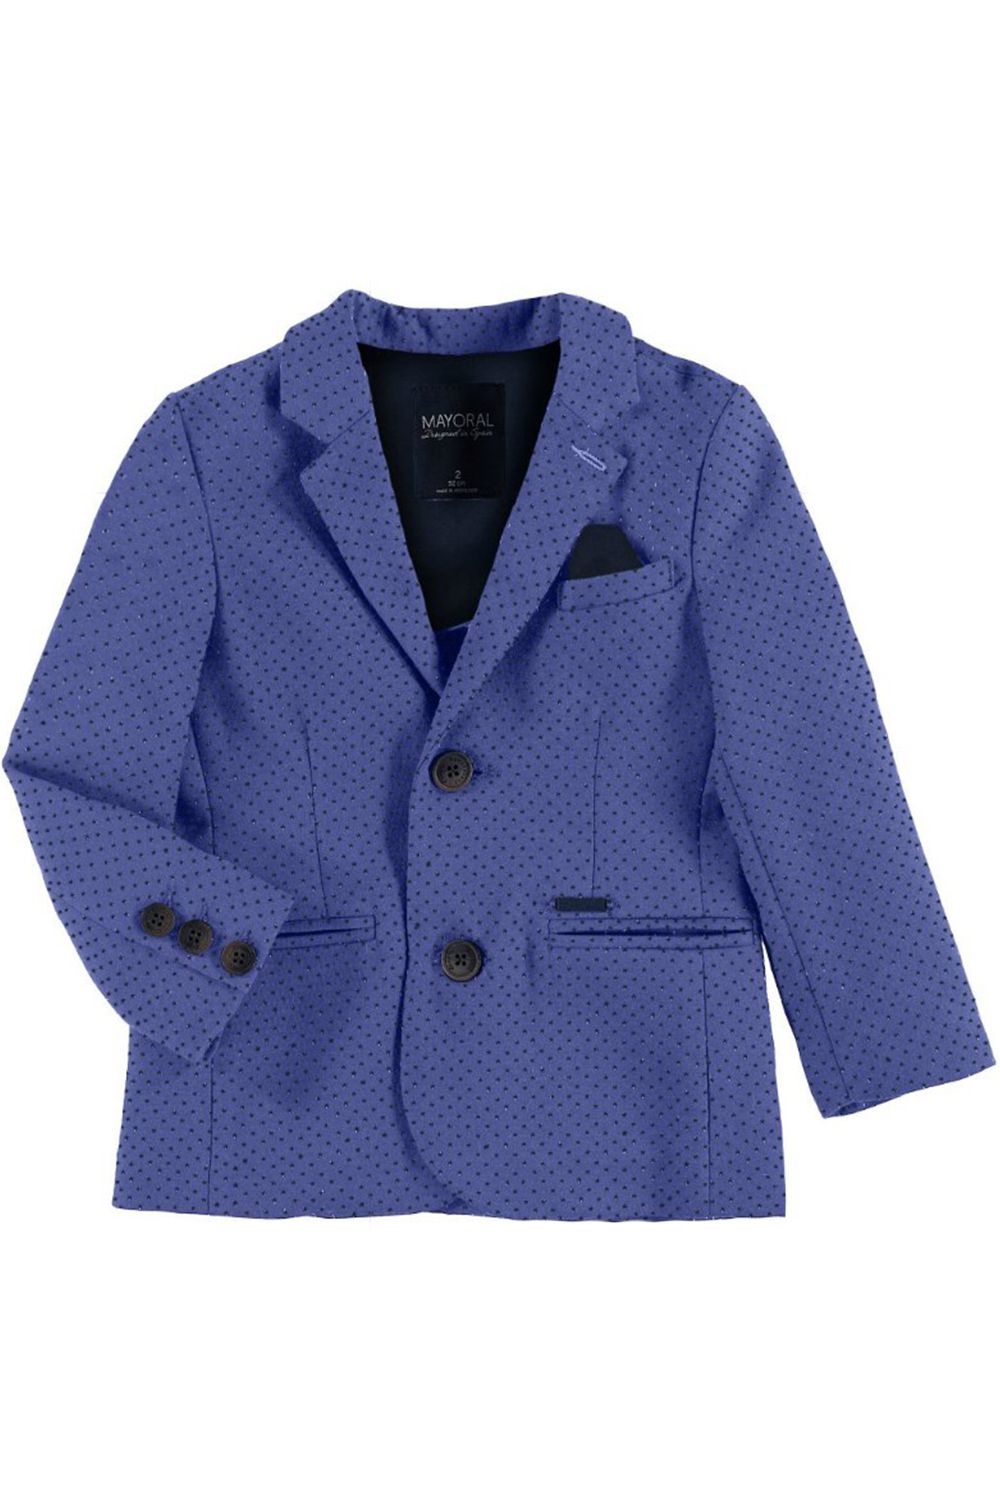 Пиджак Mayoral, размер 98, цвет голубой